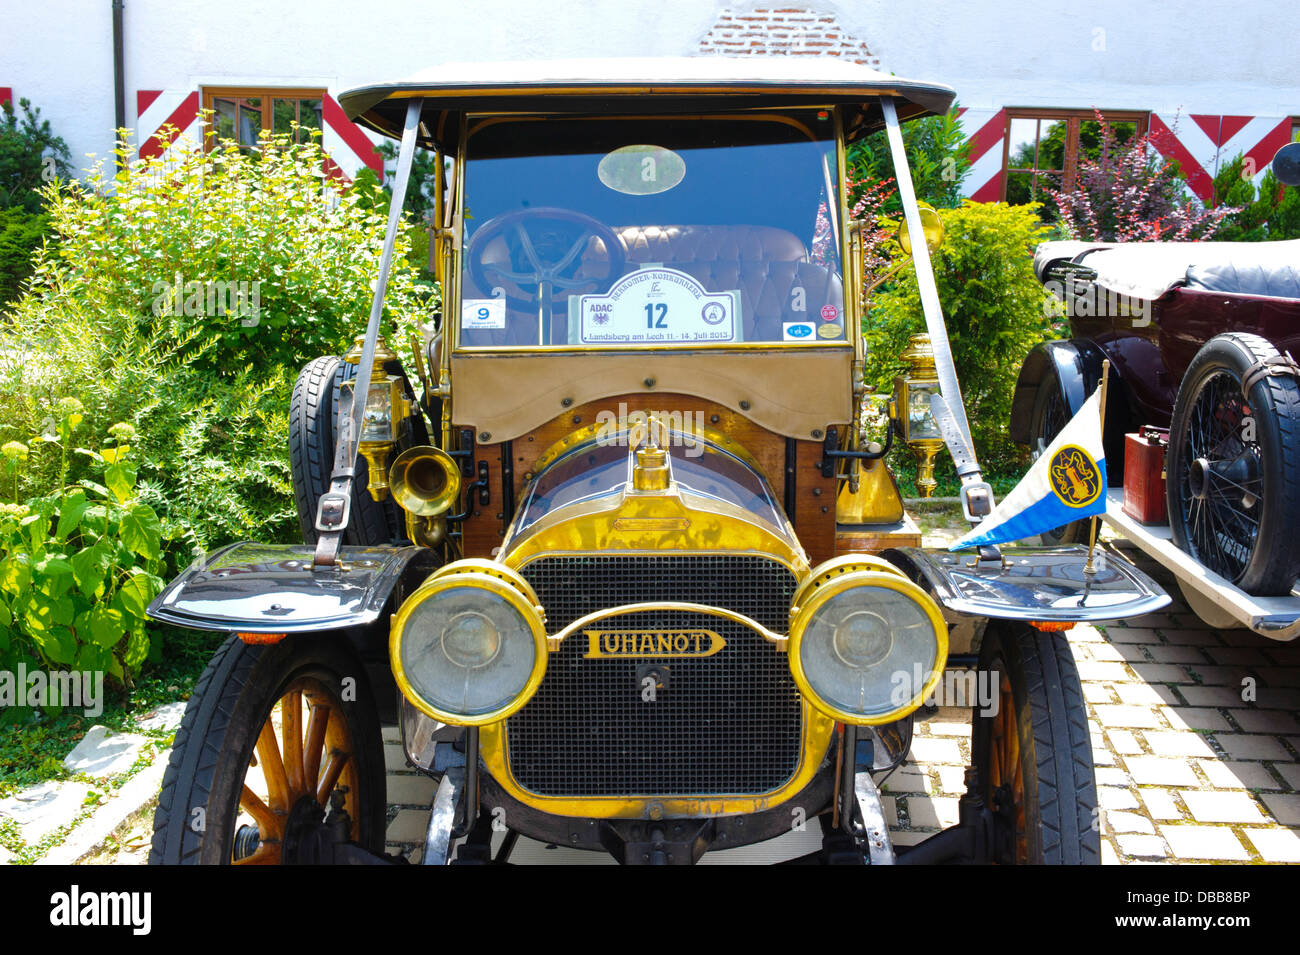 Oldtimer Rallye für mindestens 80 Jahre alte antike Autos mit Duhanot CG Bolide, im Jahr 1907 erbaute Stockfoto